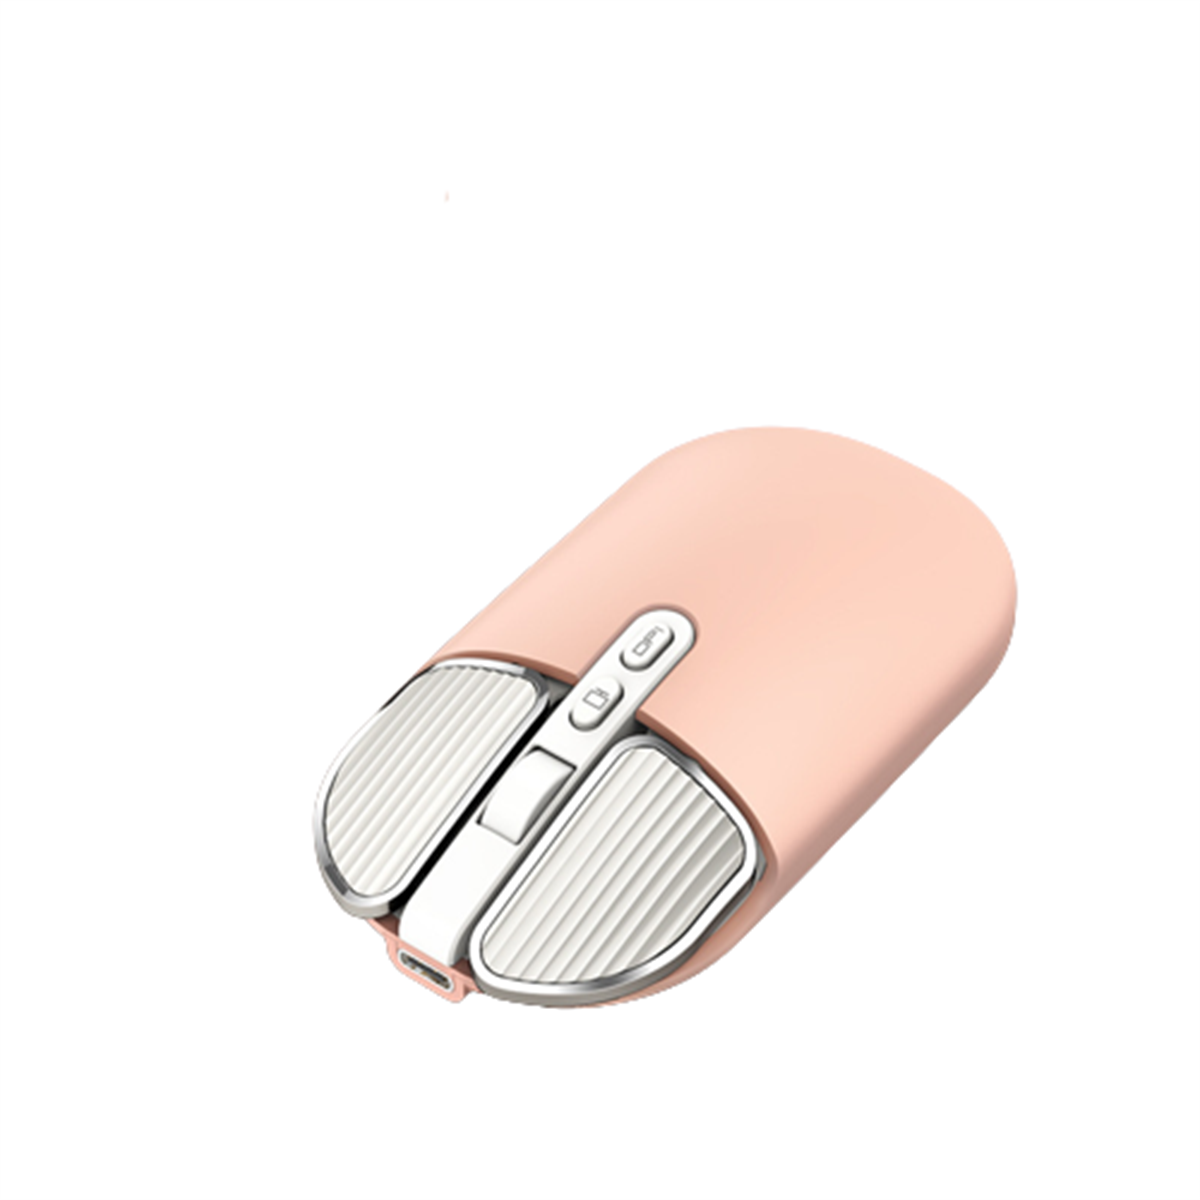 SYNTEK M203 Wireless Mouse Positionierung Maus, Rosa - präzise Dual-Mode-Verbindung